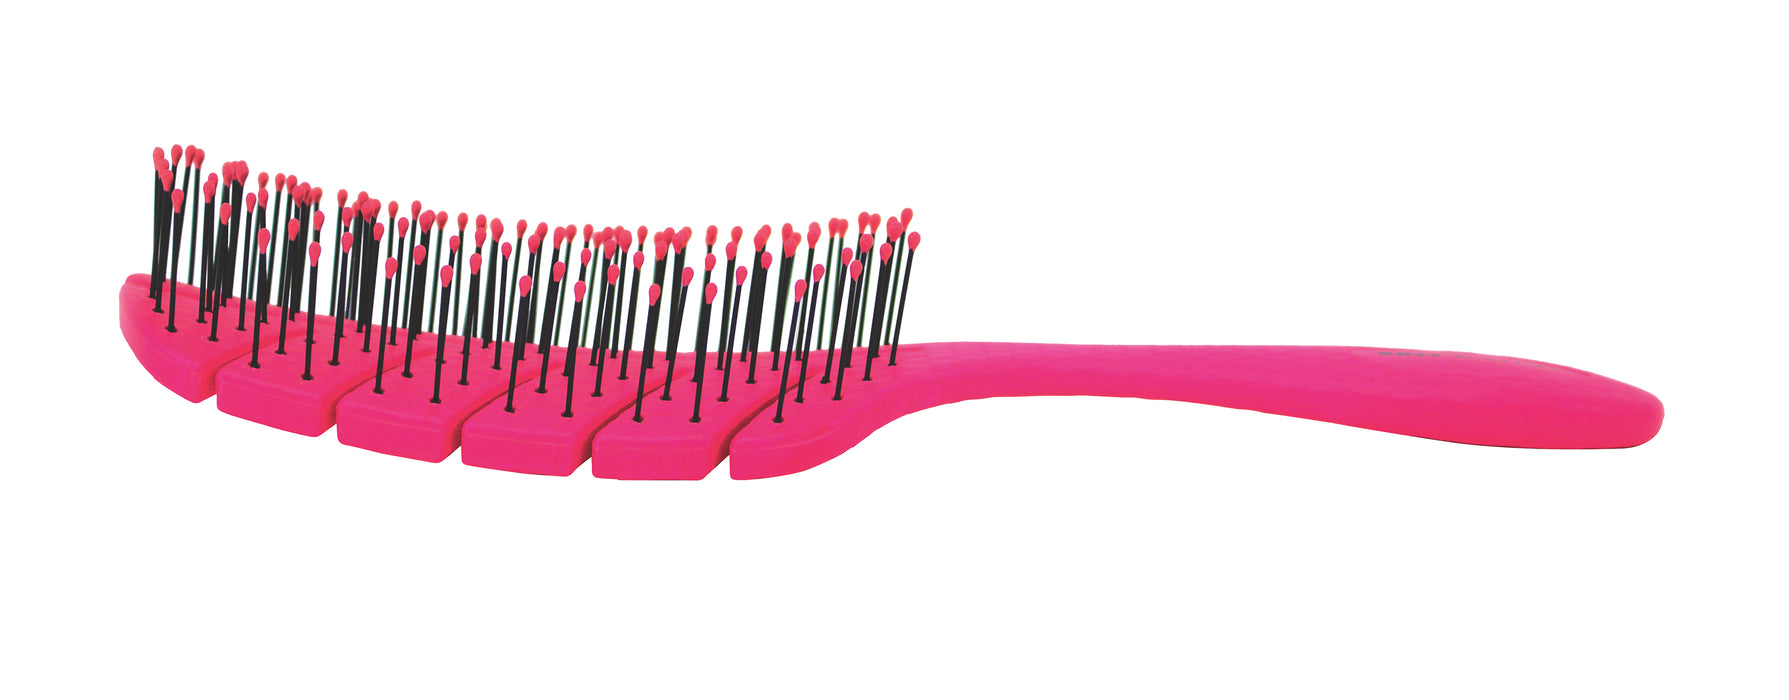 10% OFF: Bass BIO-FLEX Detangling Pink Hair Brush (Assorted Colour)